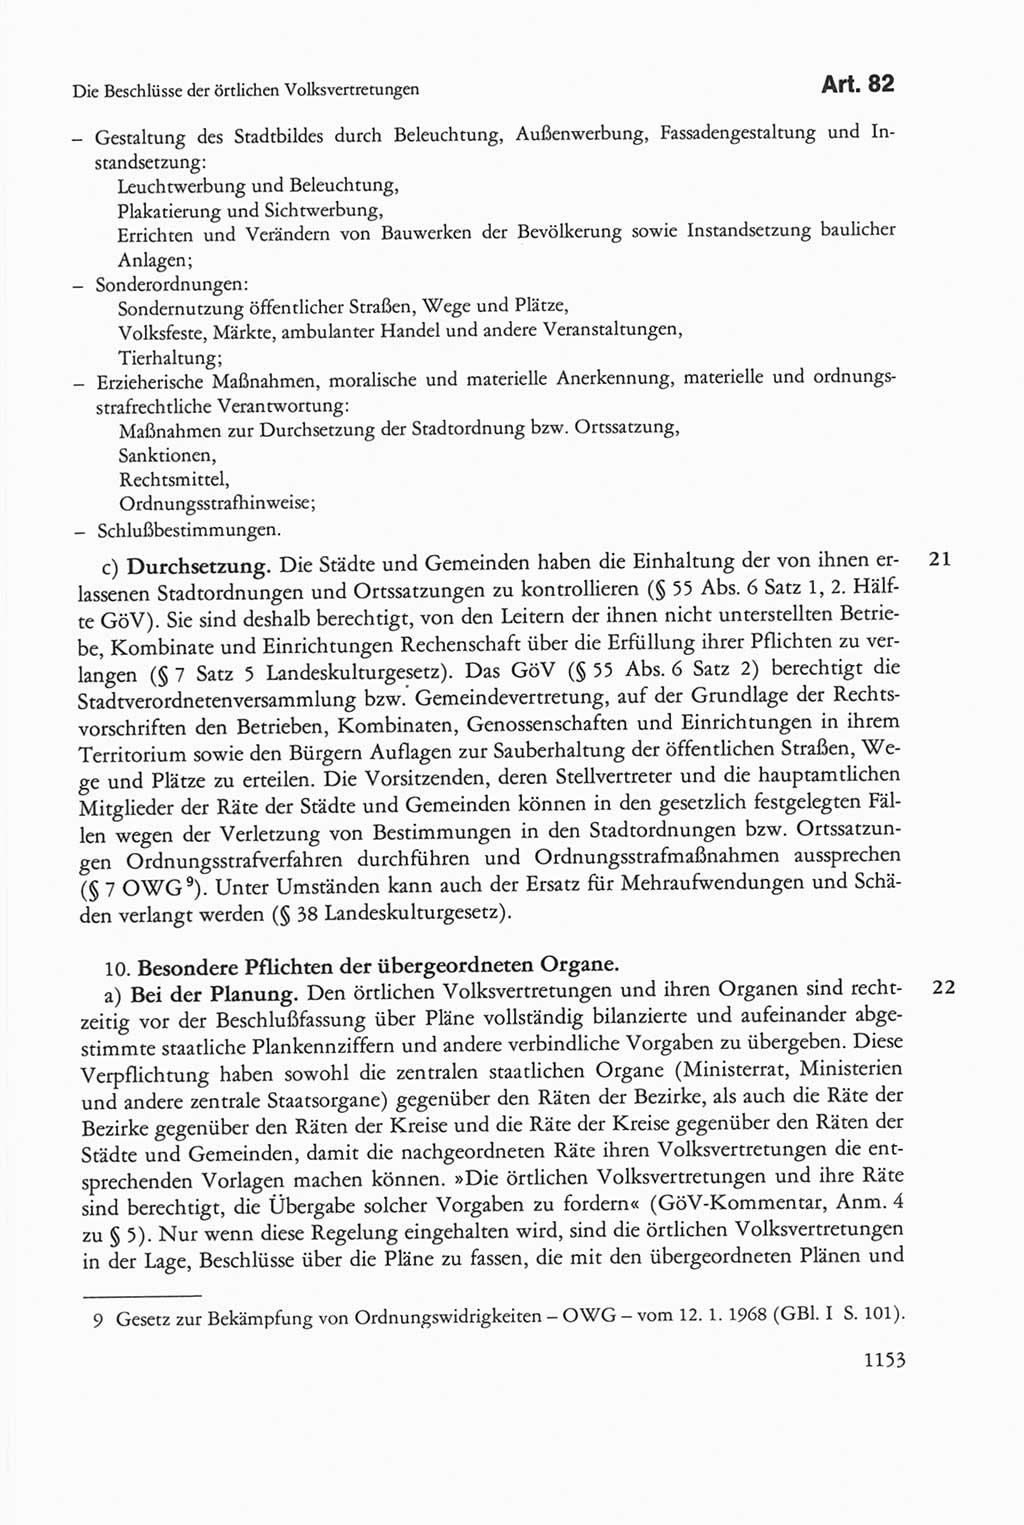 Die sozialistische Verfassung der Deutschen Demokratischen Republik (DDR), Kommentar 1982, Seite 1153 (Soz. Verf. DDR Komm. 1982, S. 1153)